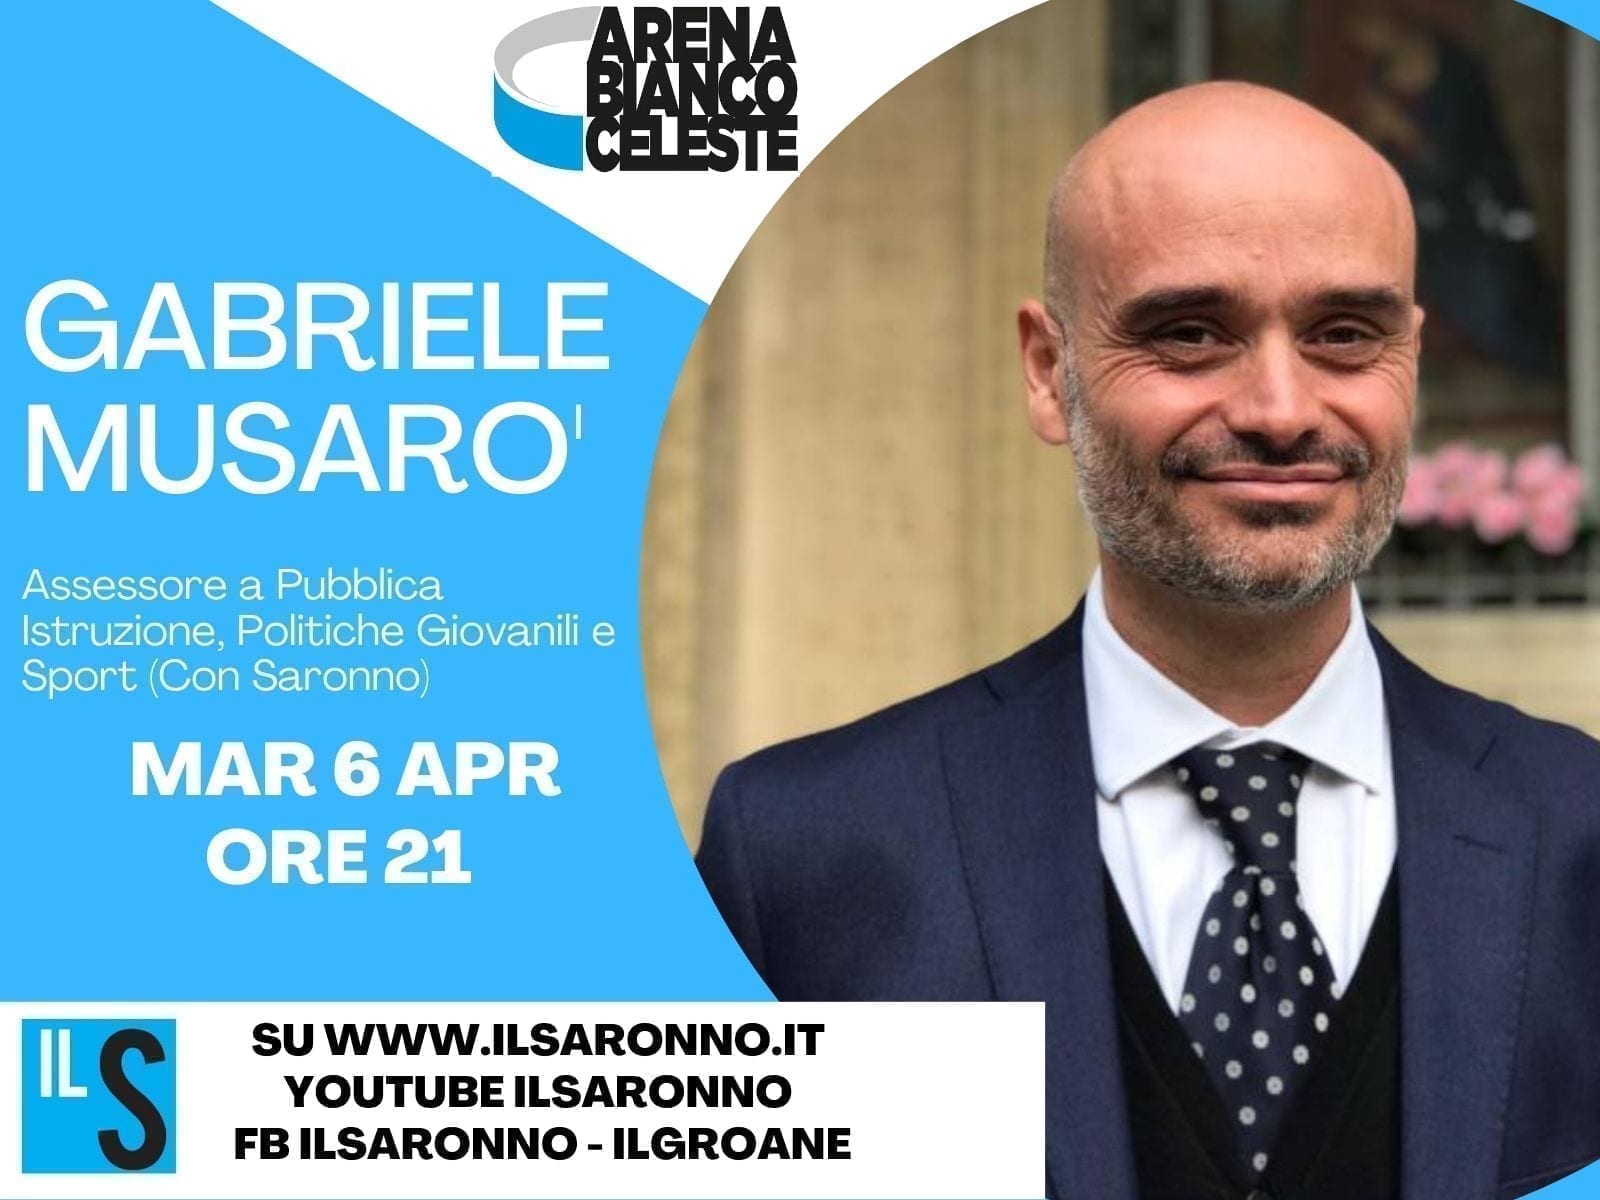 L’assessore Gabriele Musarò (Con Saronno) protagonista all’Abc: stasera live alle 21